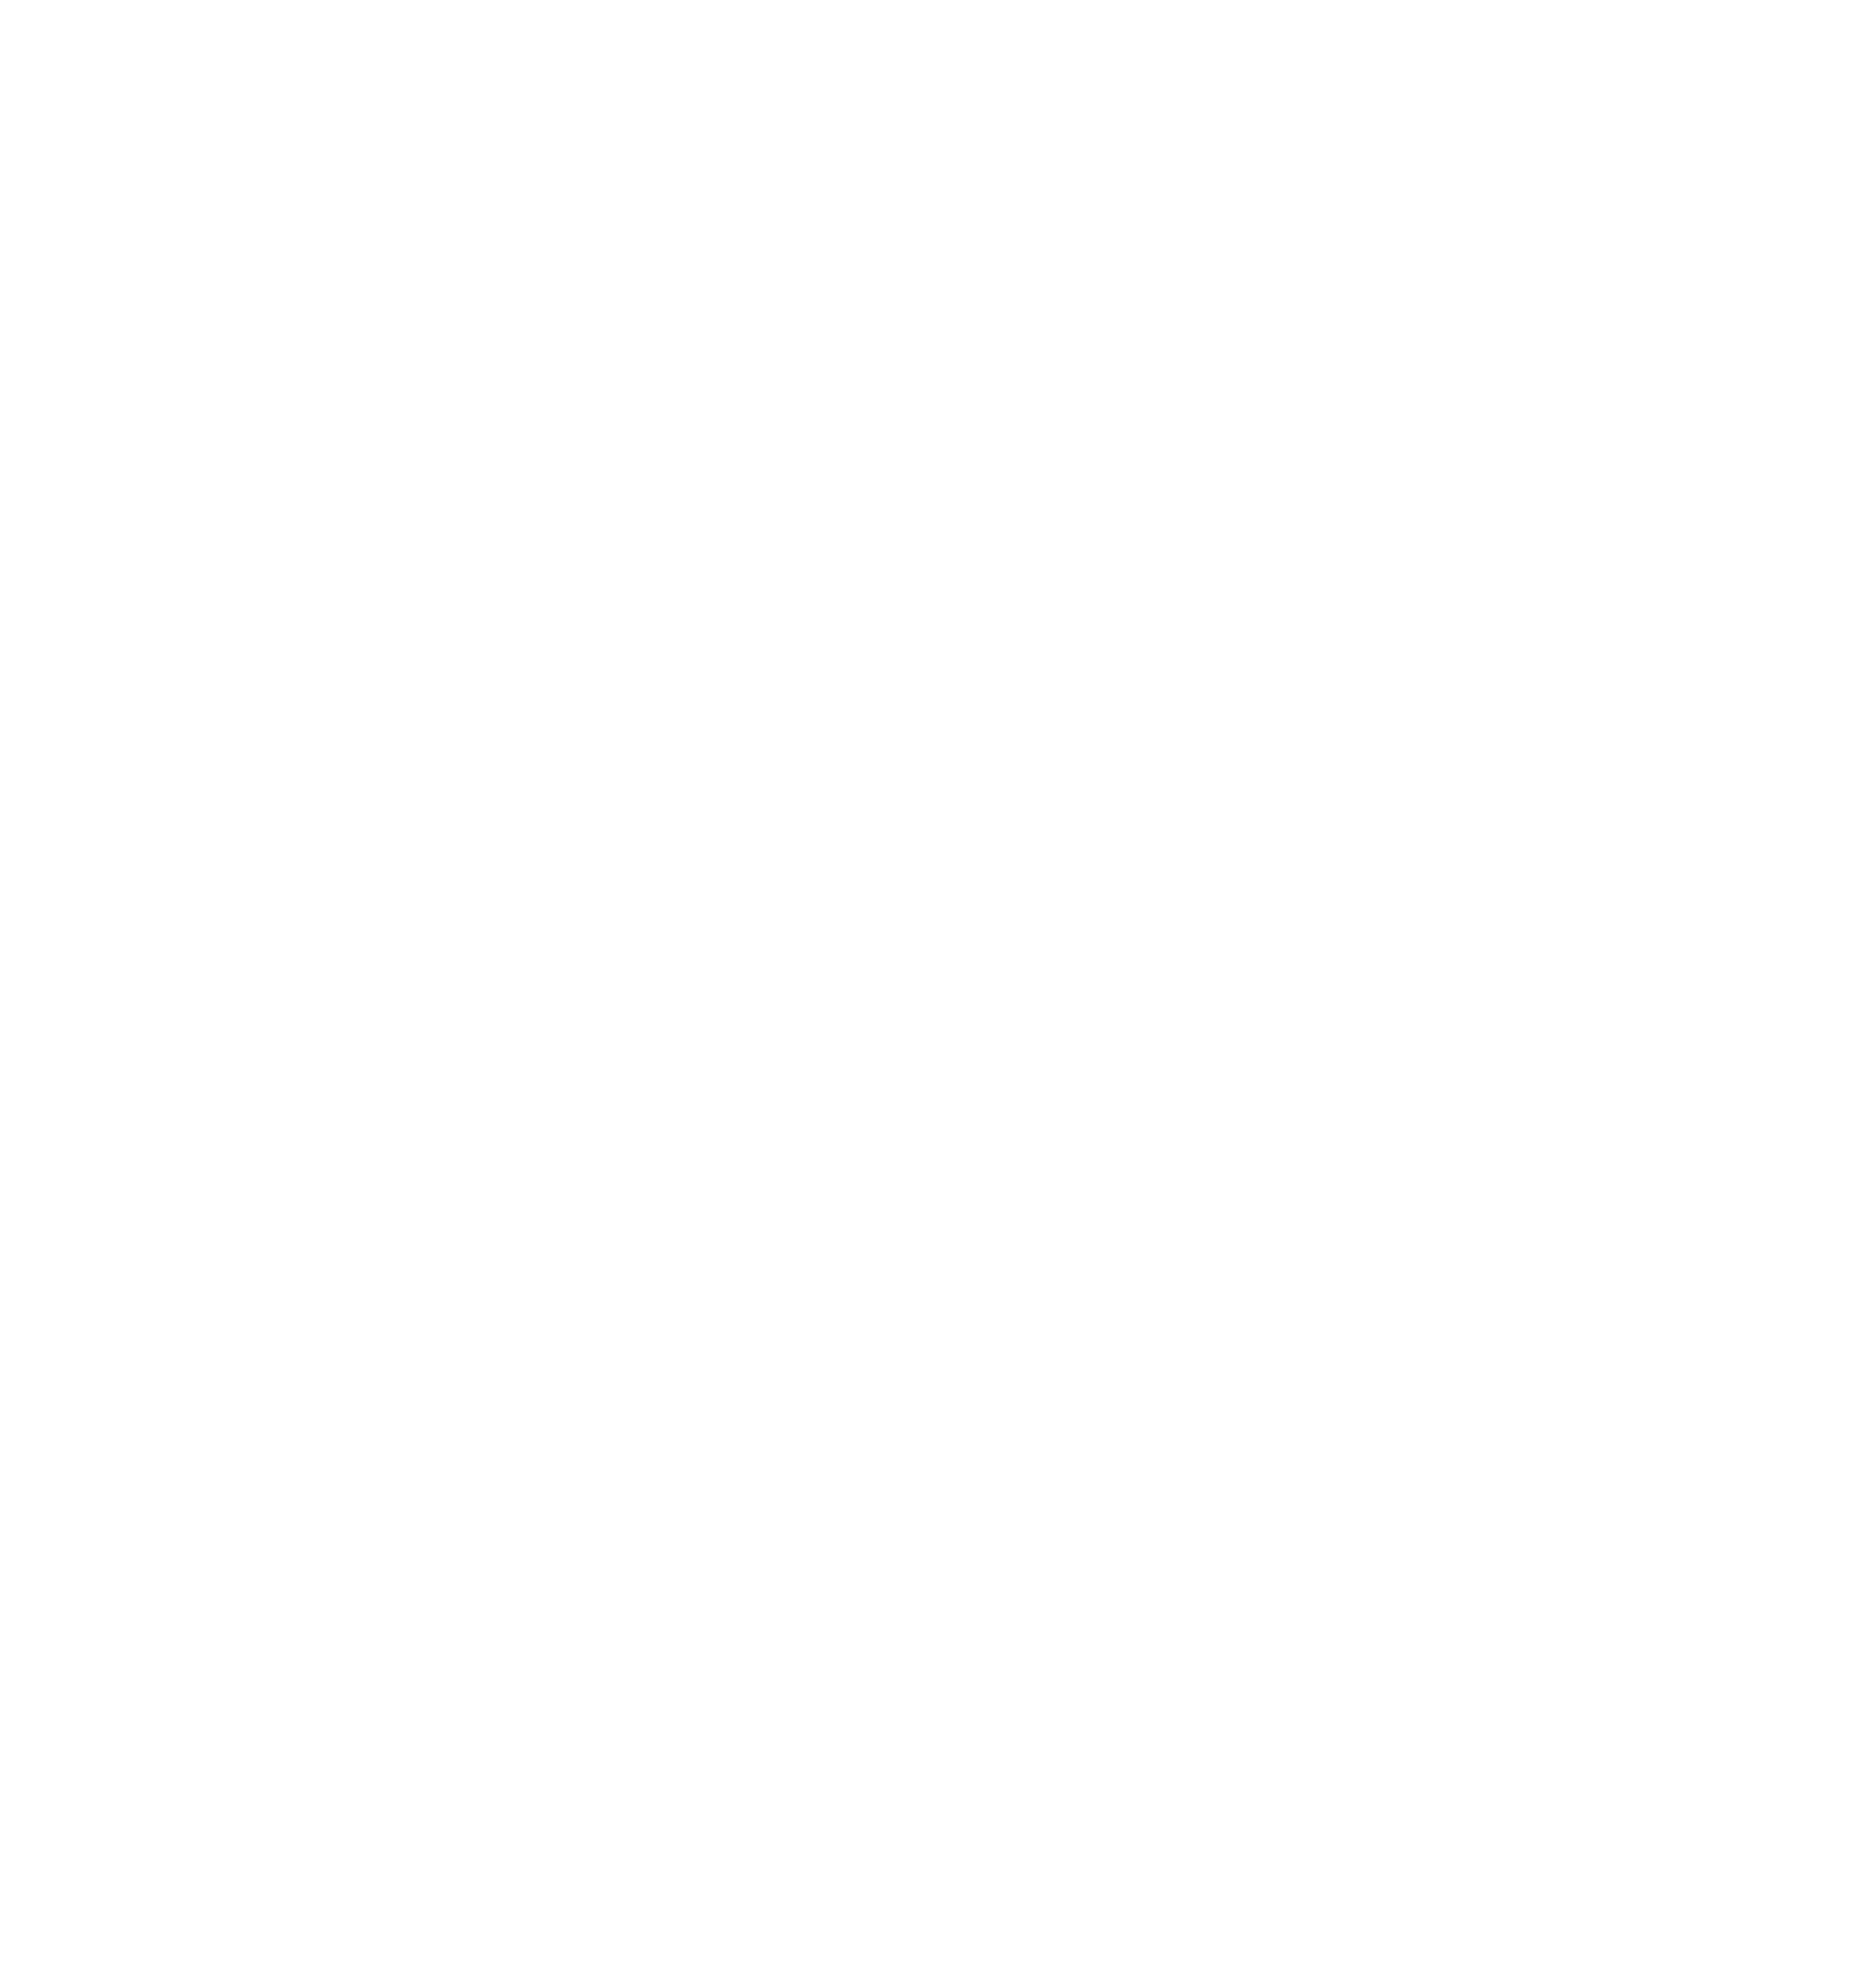 Matthew Renz – Speaker | Trainer | Author